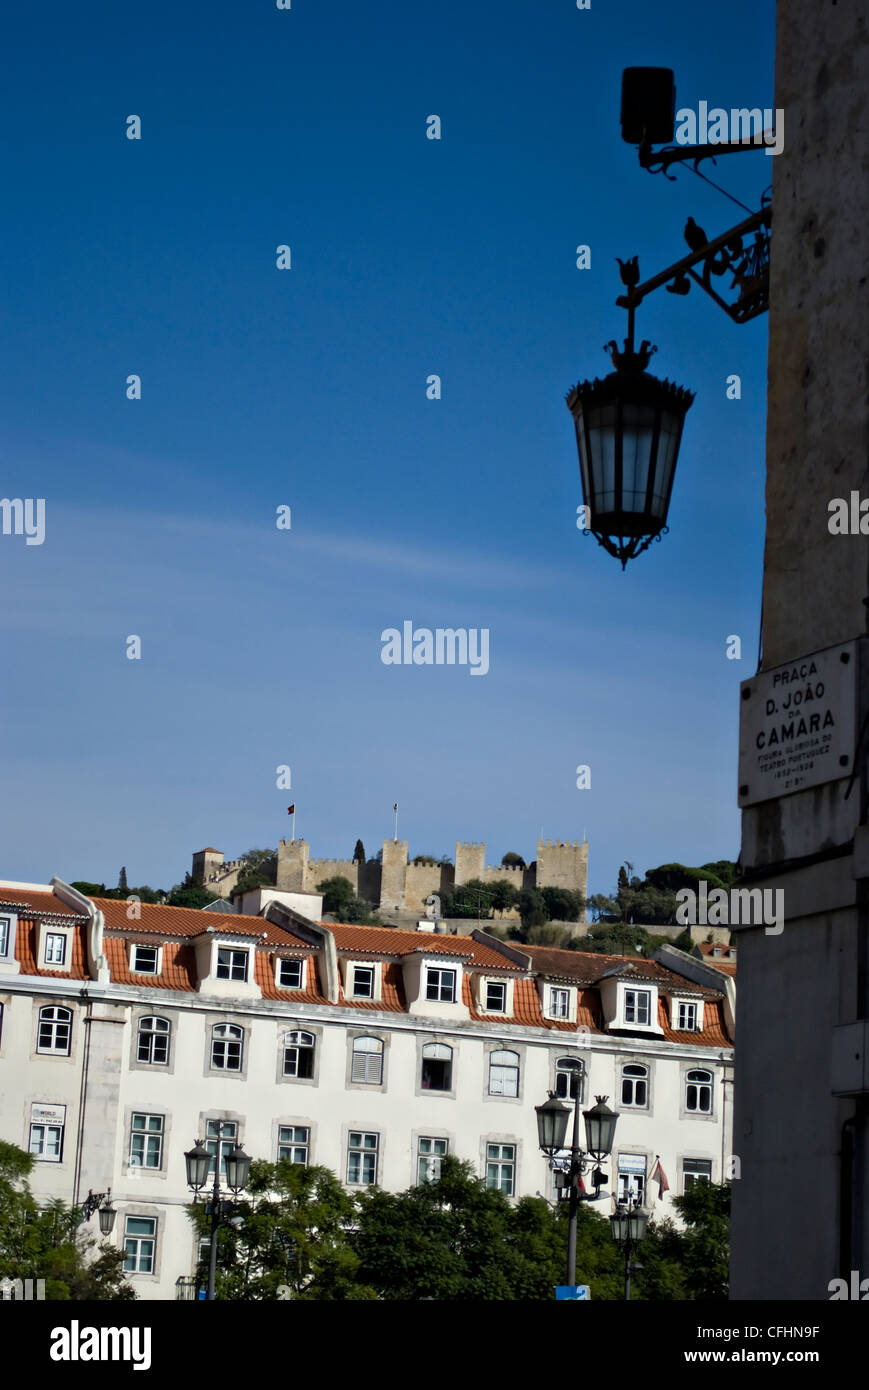 Vue sur le château de Saint George, Castelo Sao Jorge, prises dans le quartier de Rossio, le centre de Lisbonne, Portugal, Europe Banque D'Images